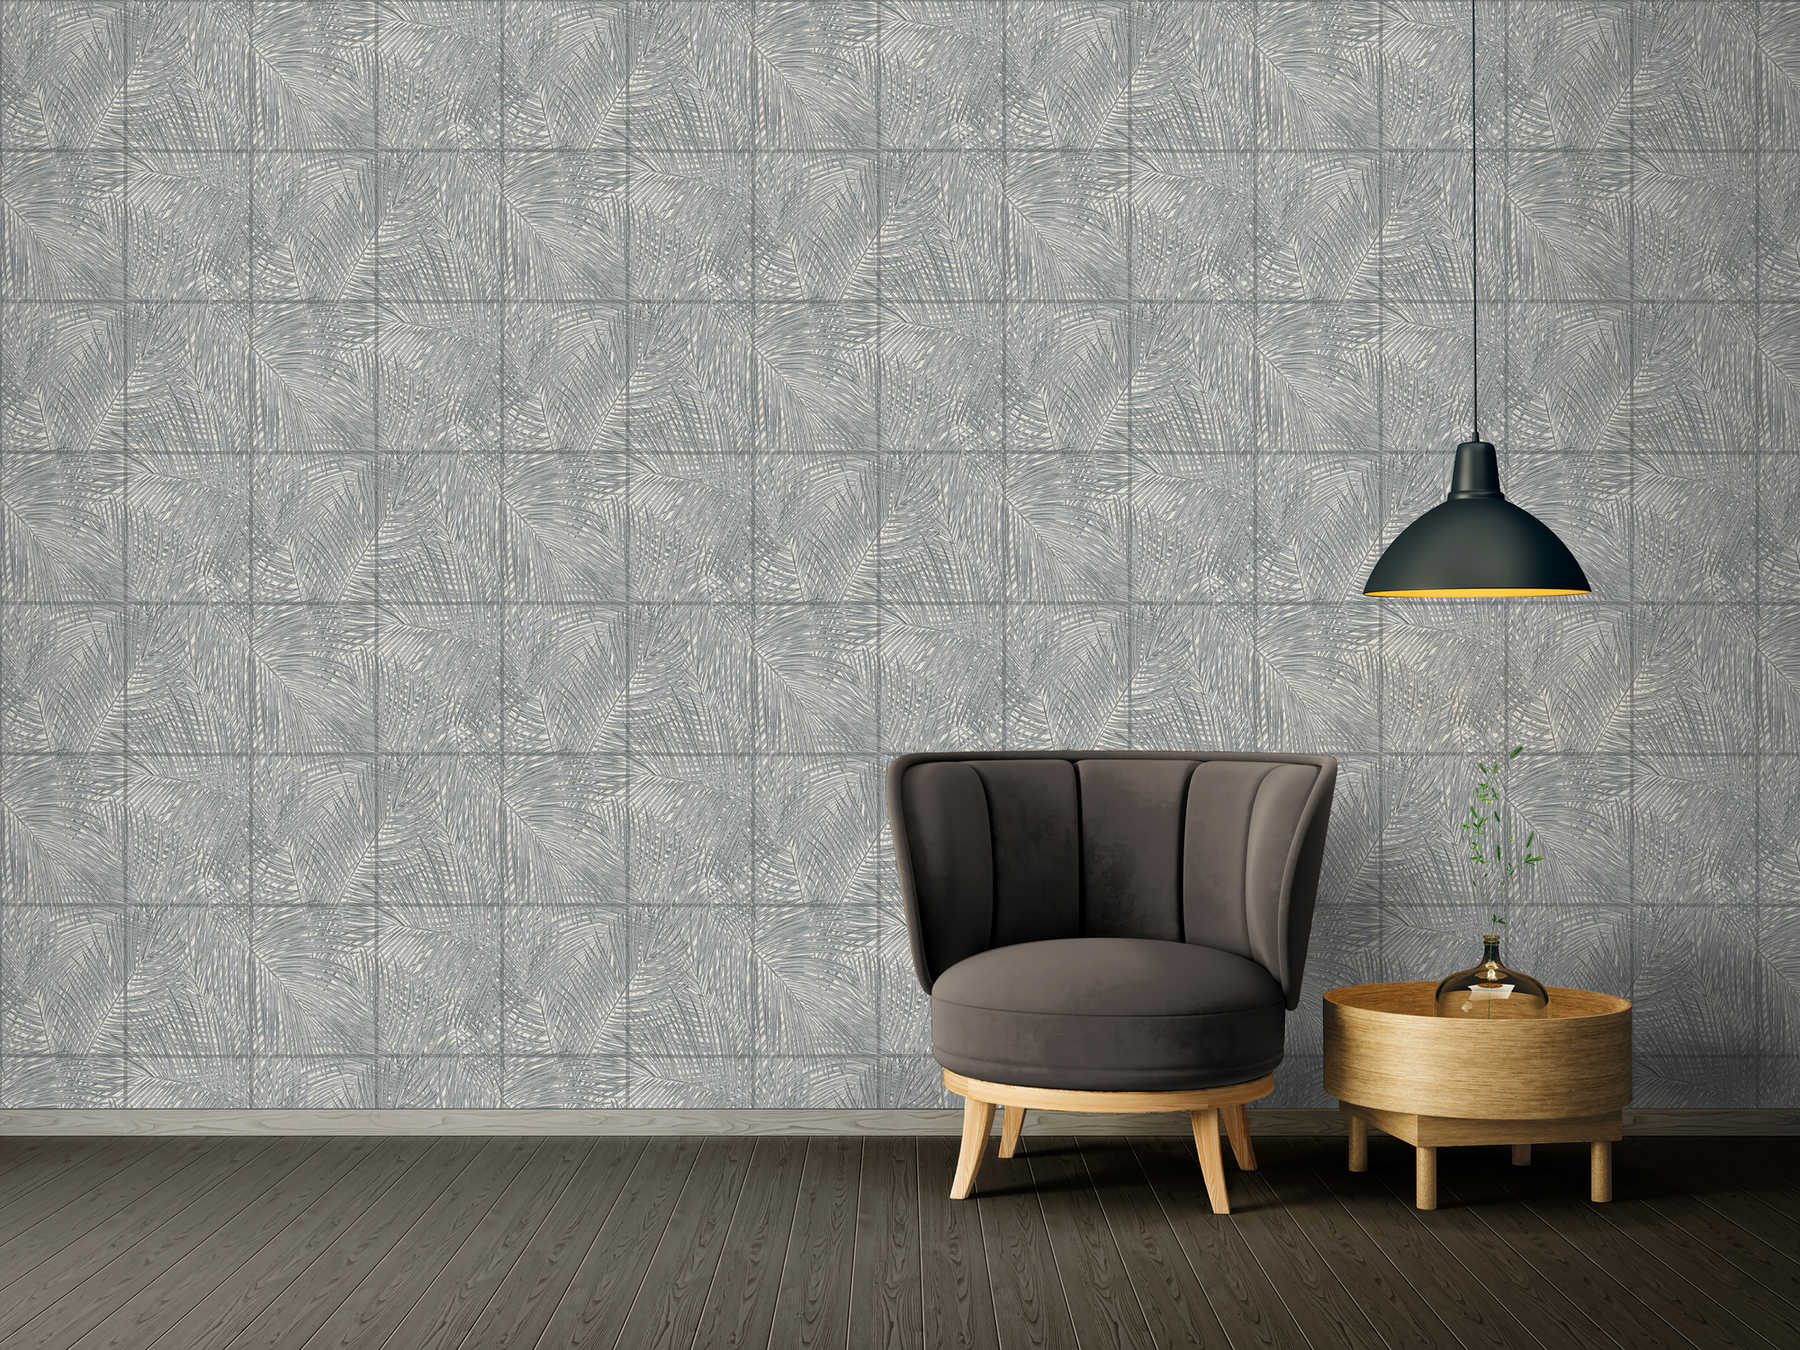             Wallpaper with tile design & leaf motif - black, white, grey
        